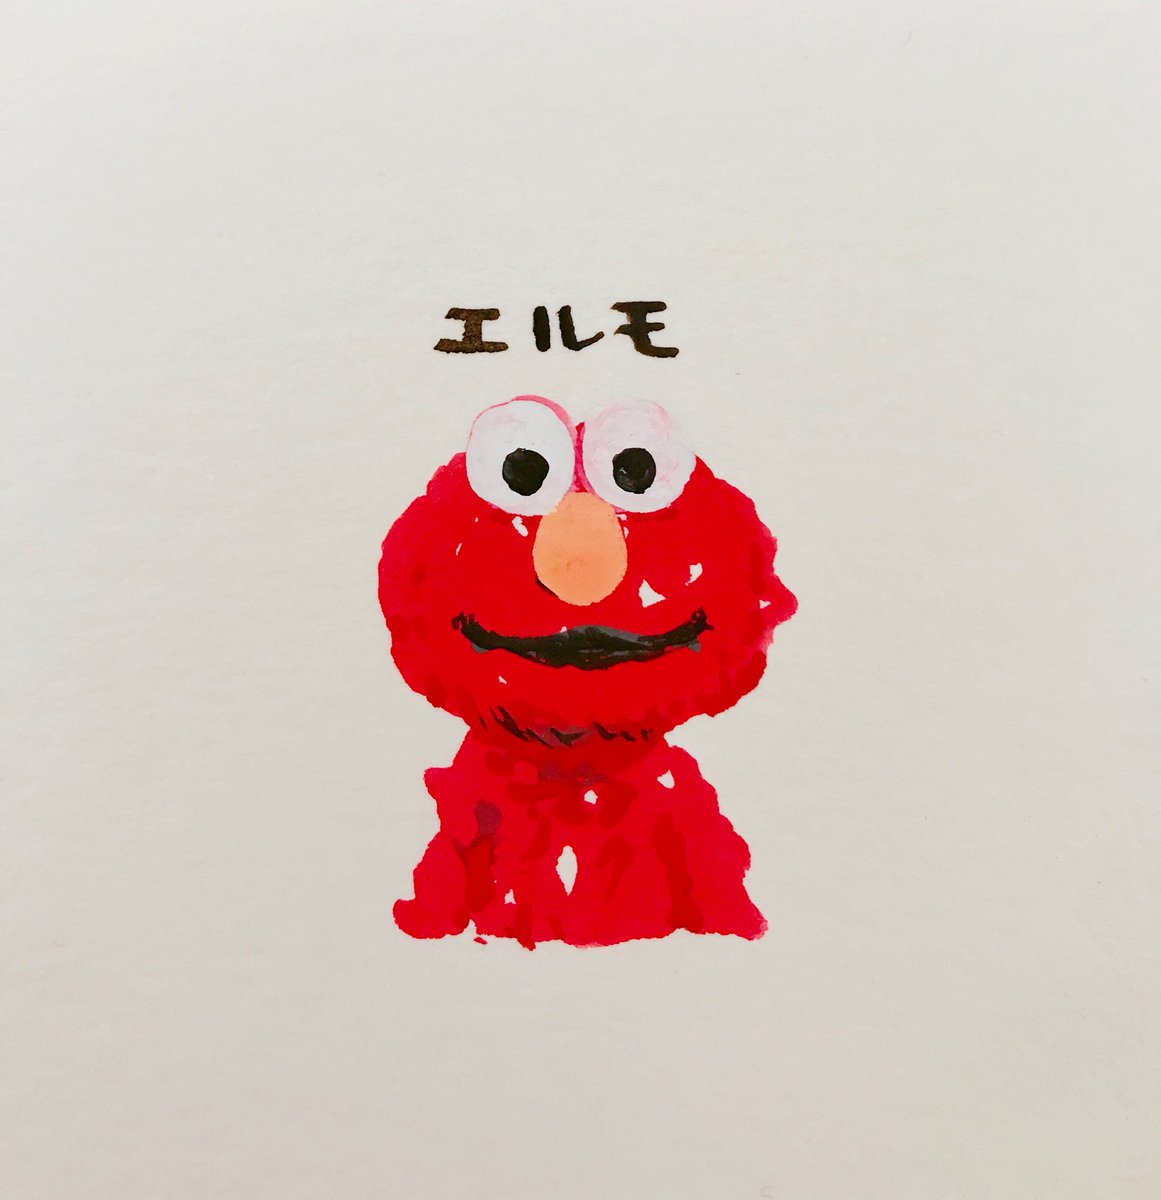 赤い絵の具を出したので紙の端っこに赤くて可愛い子を描いてみた ポスターカラー 羽海野 チカのイラスト